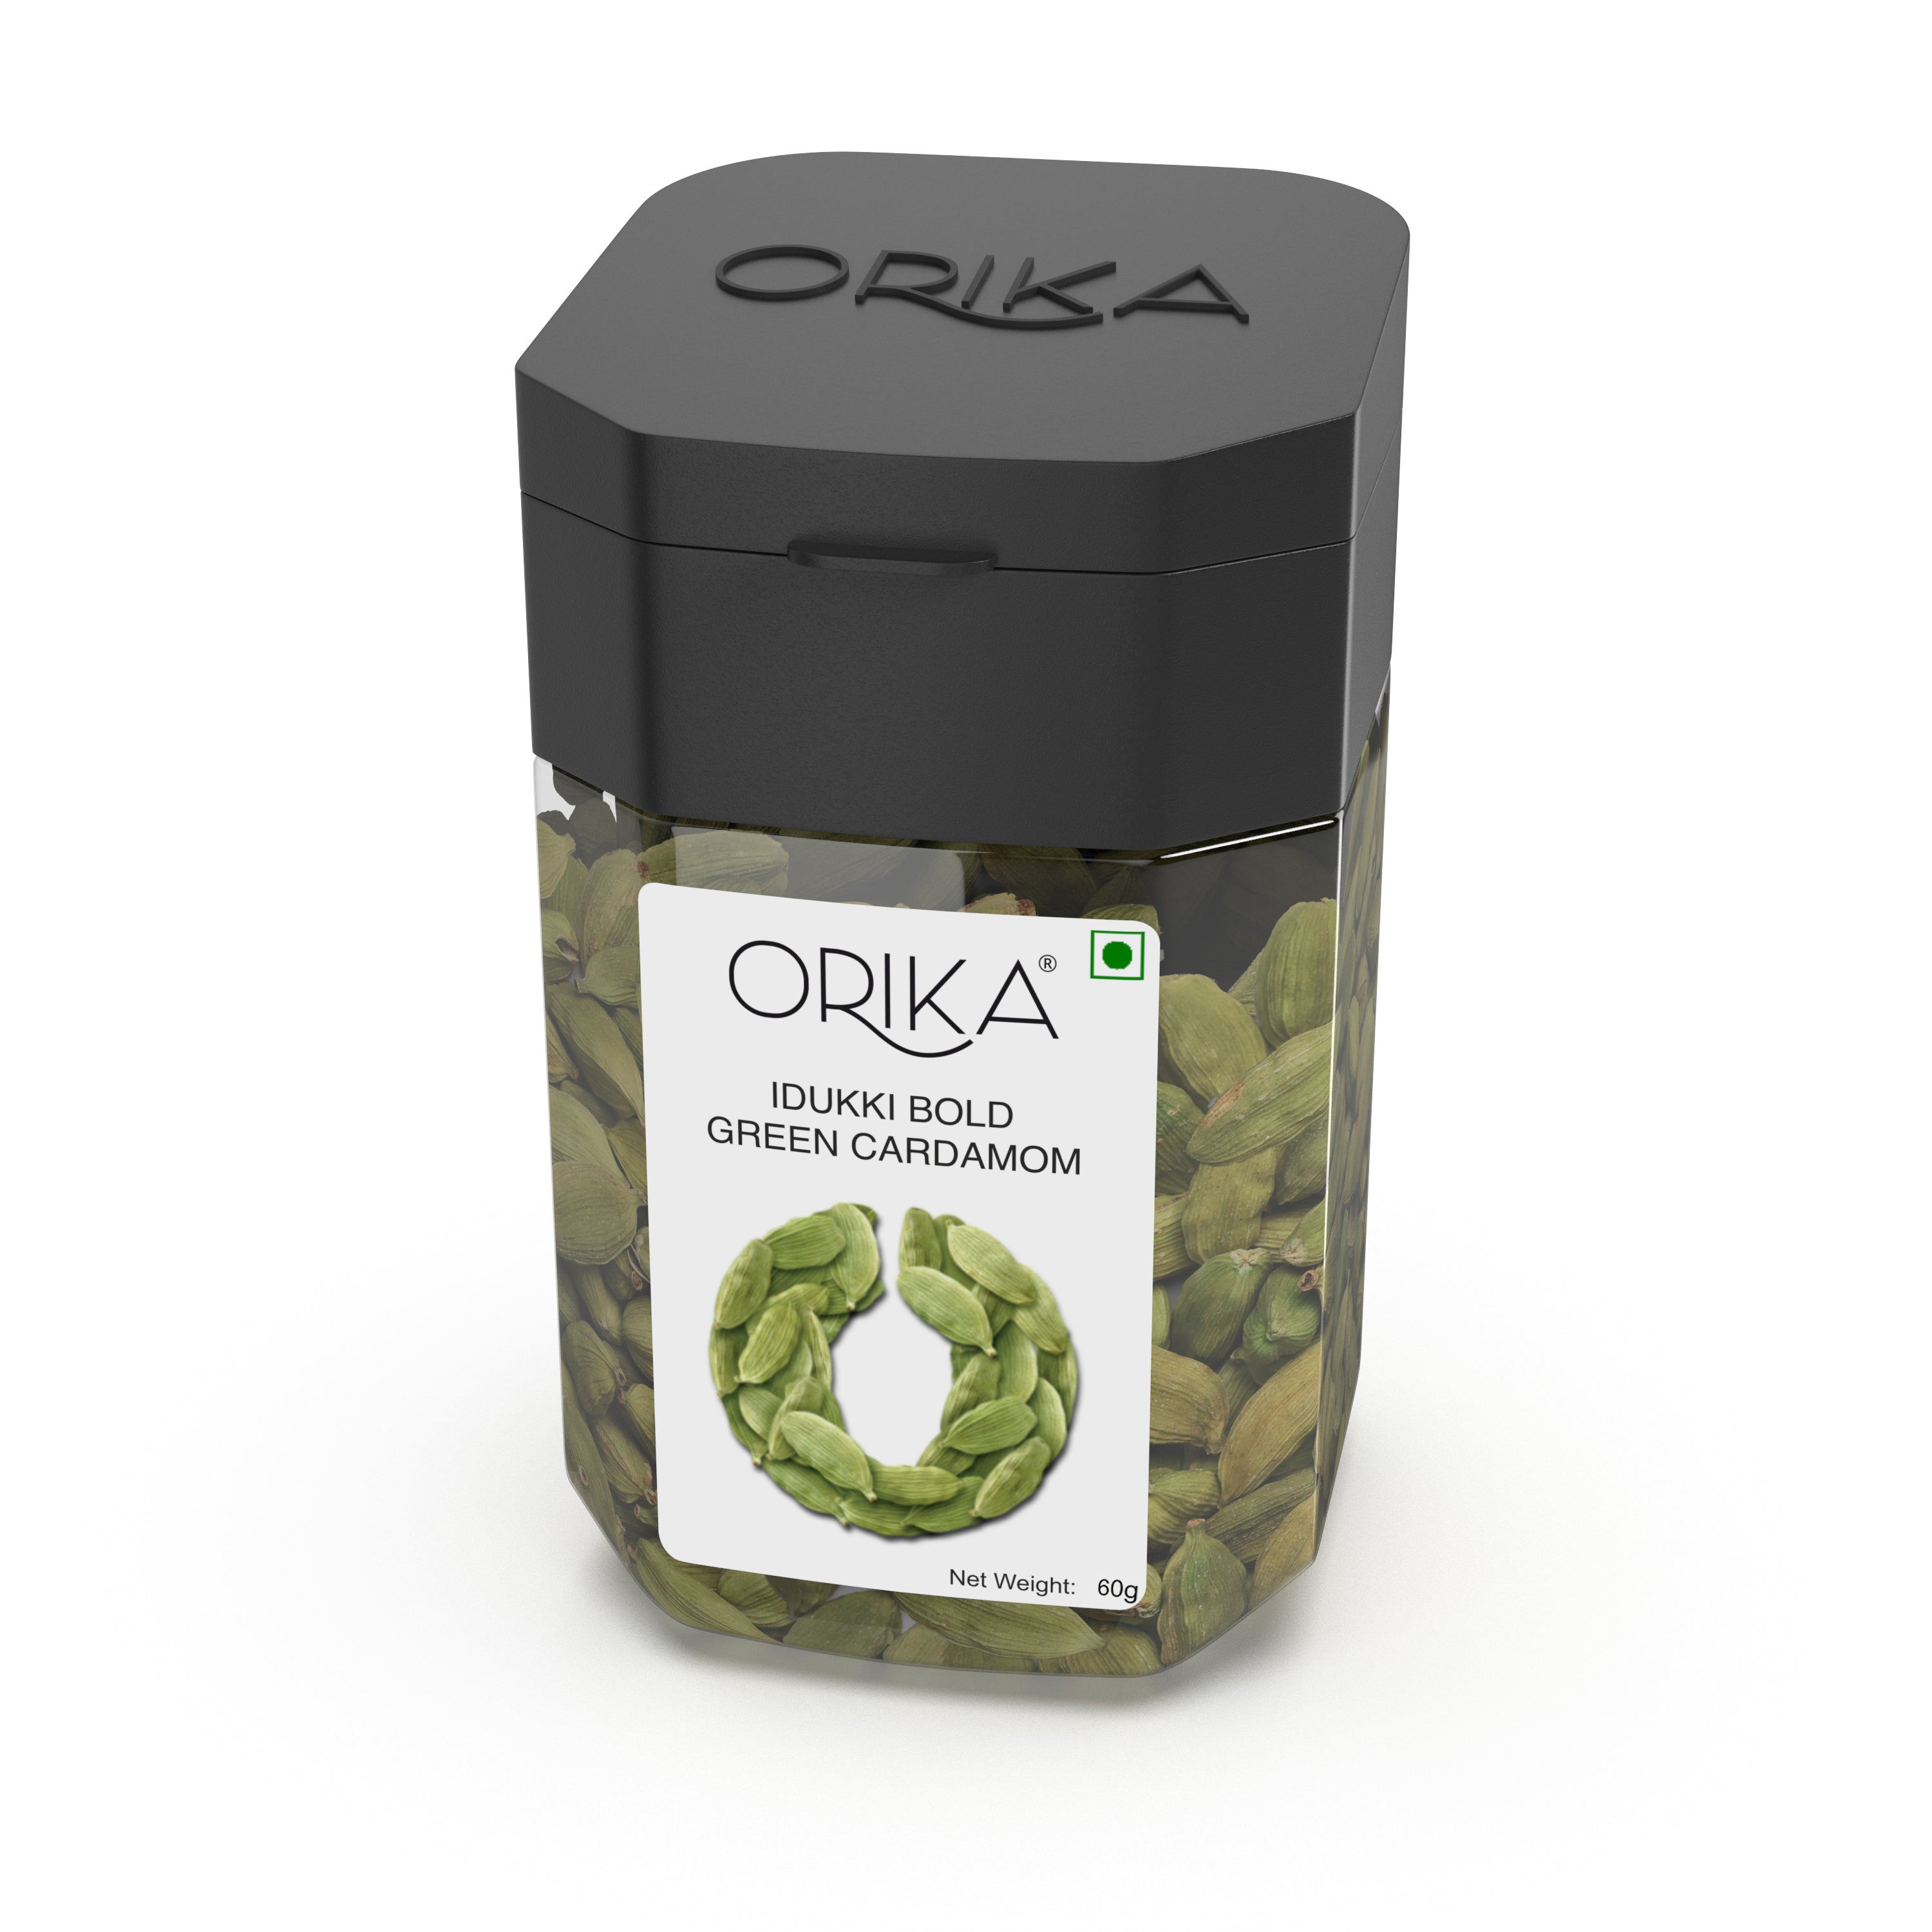 Orika's Idukki Bold Green Cardamom, 60g